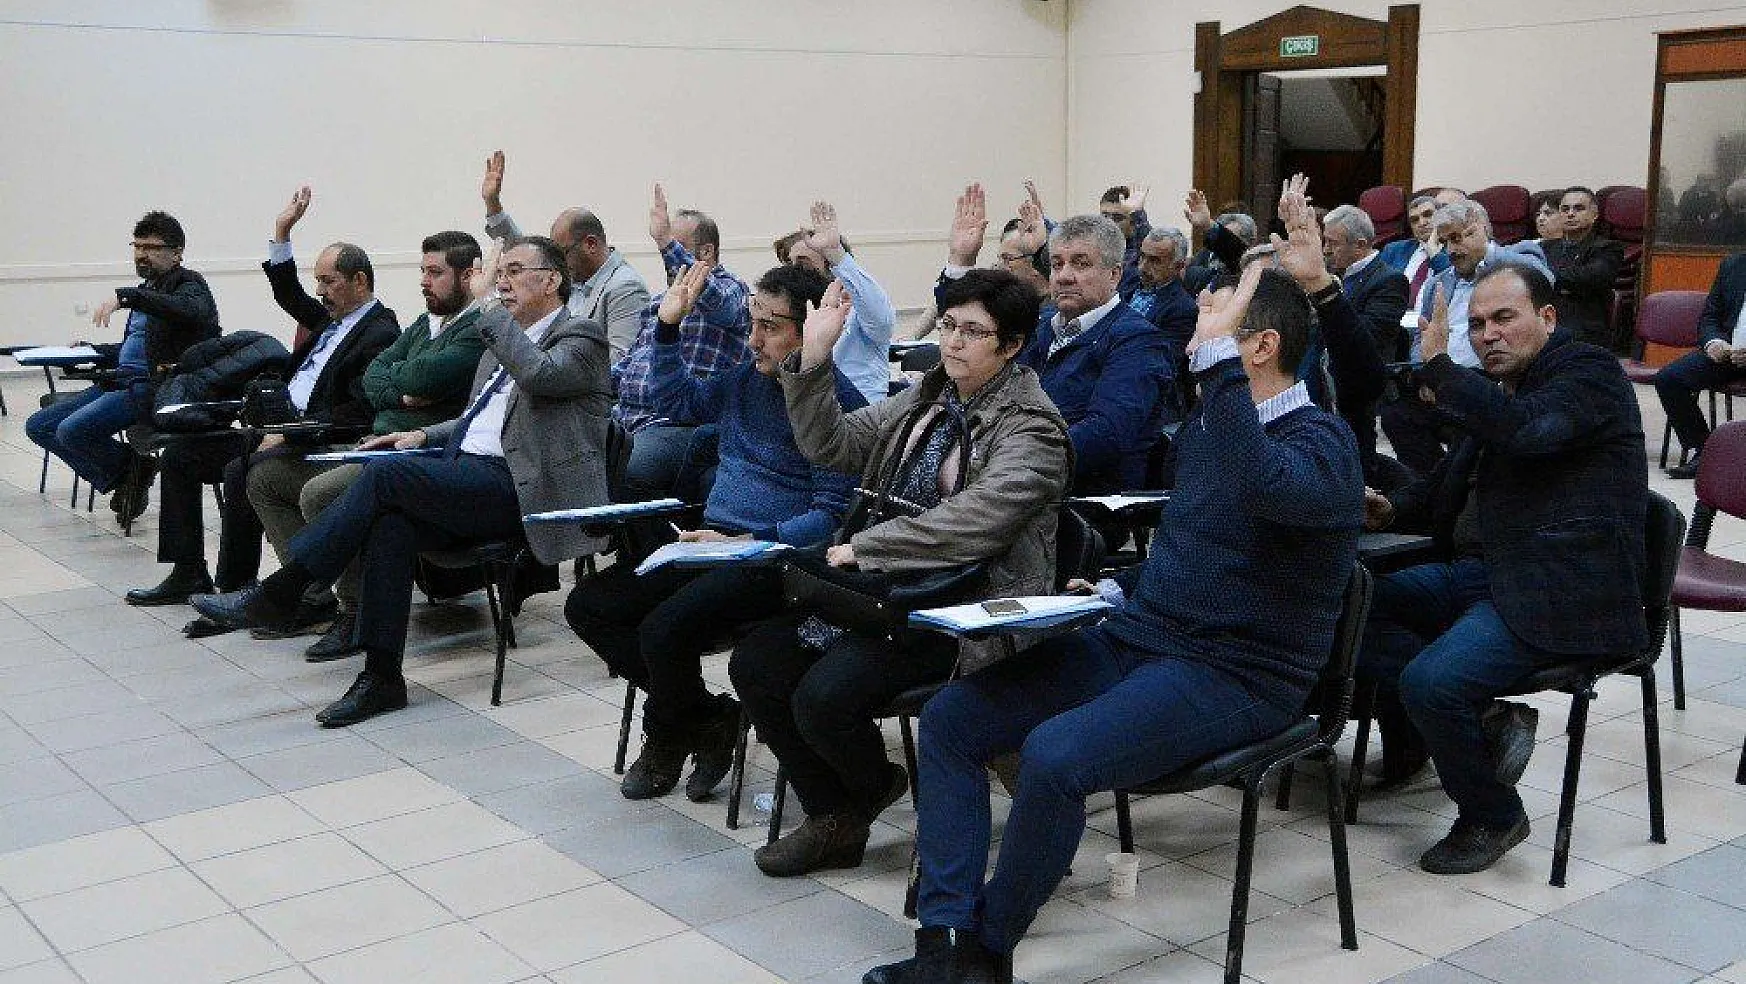 Menteşe Belediye Meclisi yılın son toplantısını yaptı